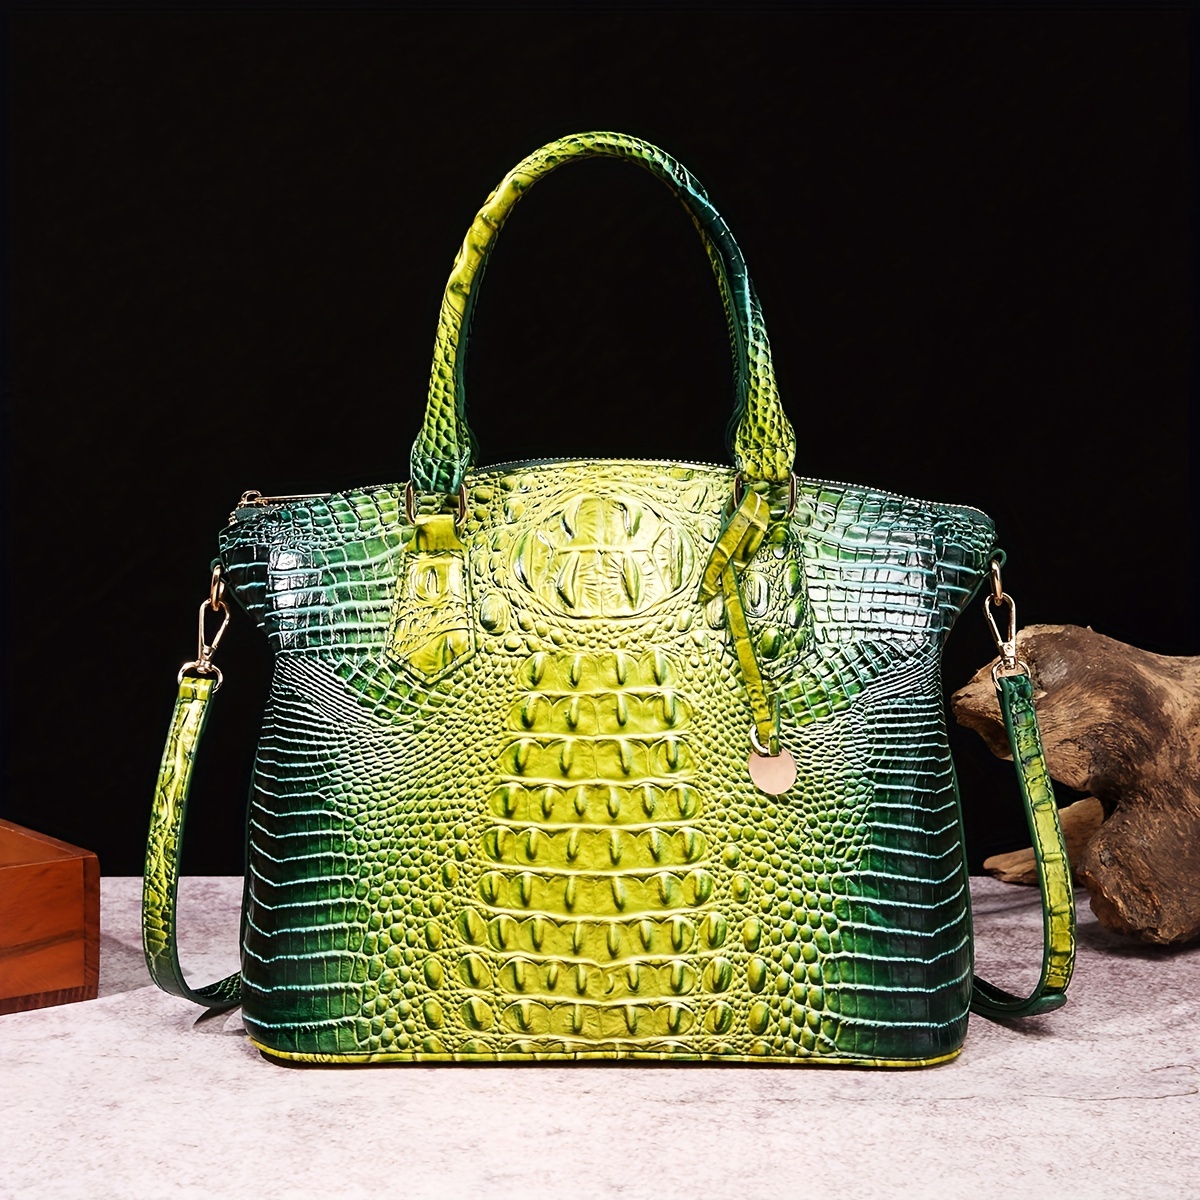 Luxury Brand Women's Bags Commuter Crocodile Pattern Leather Women